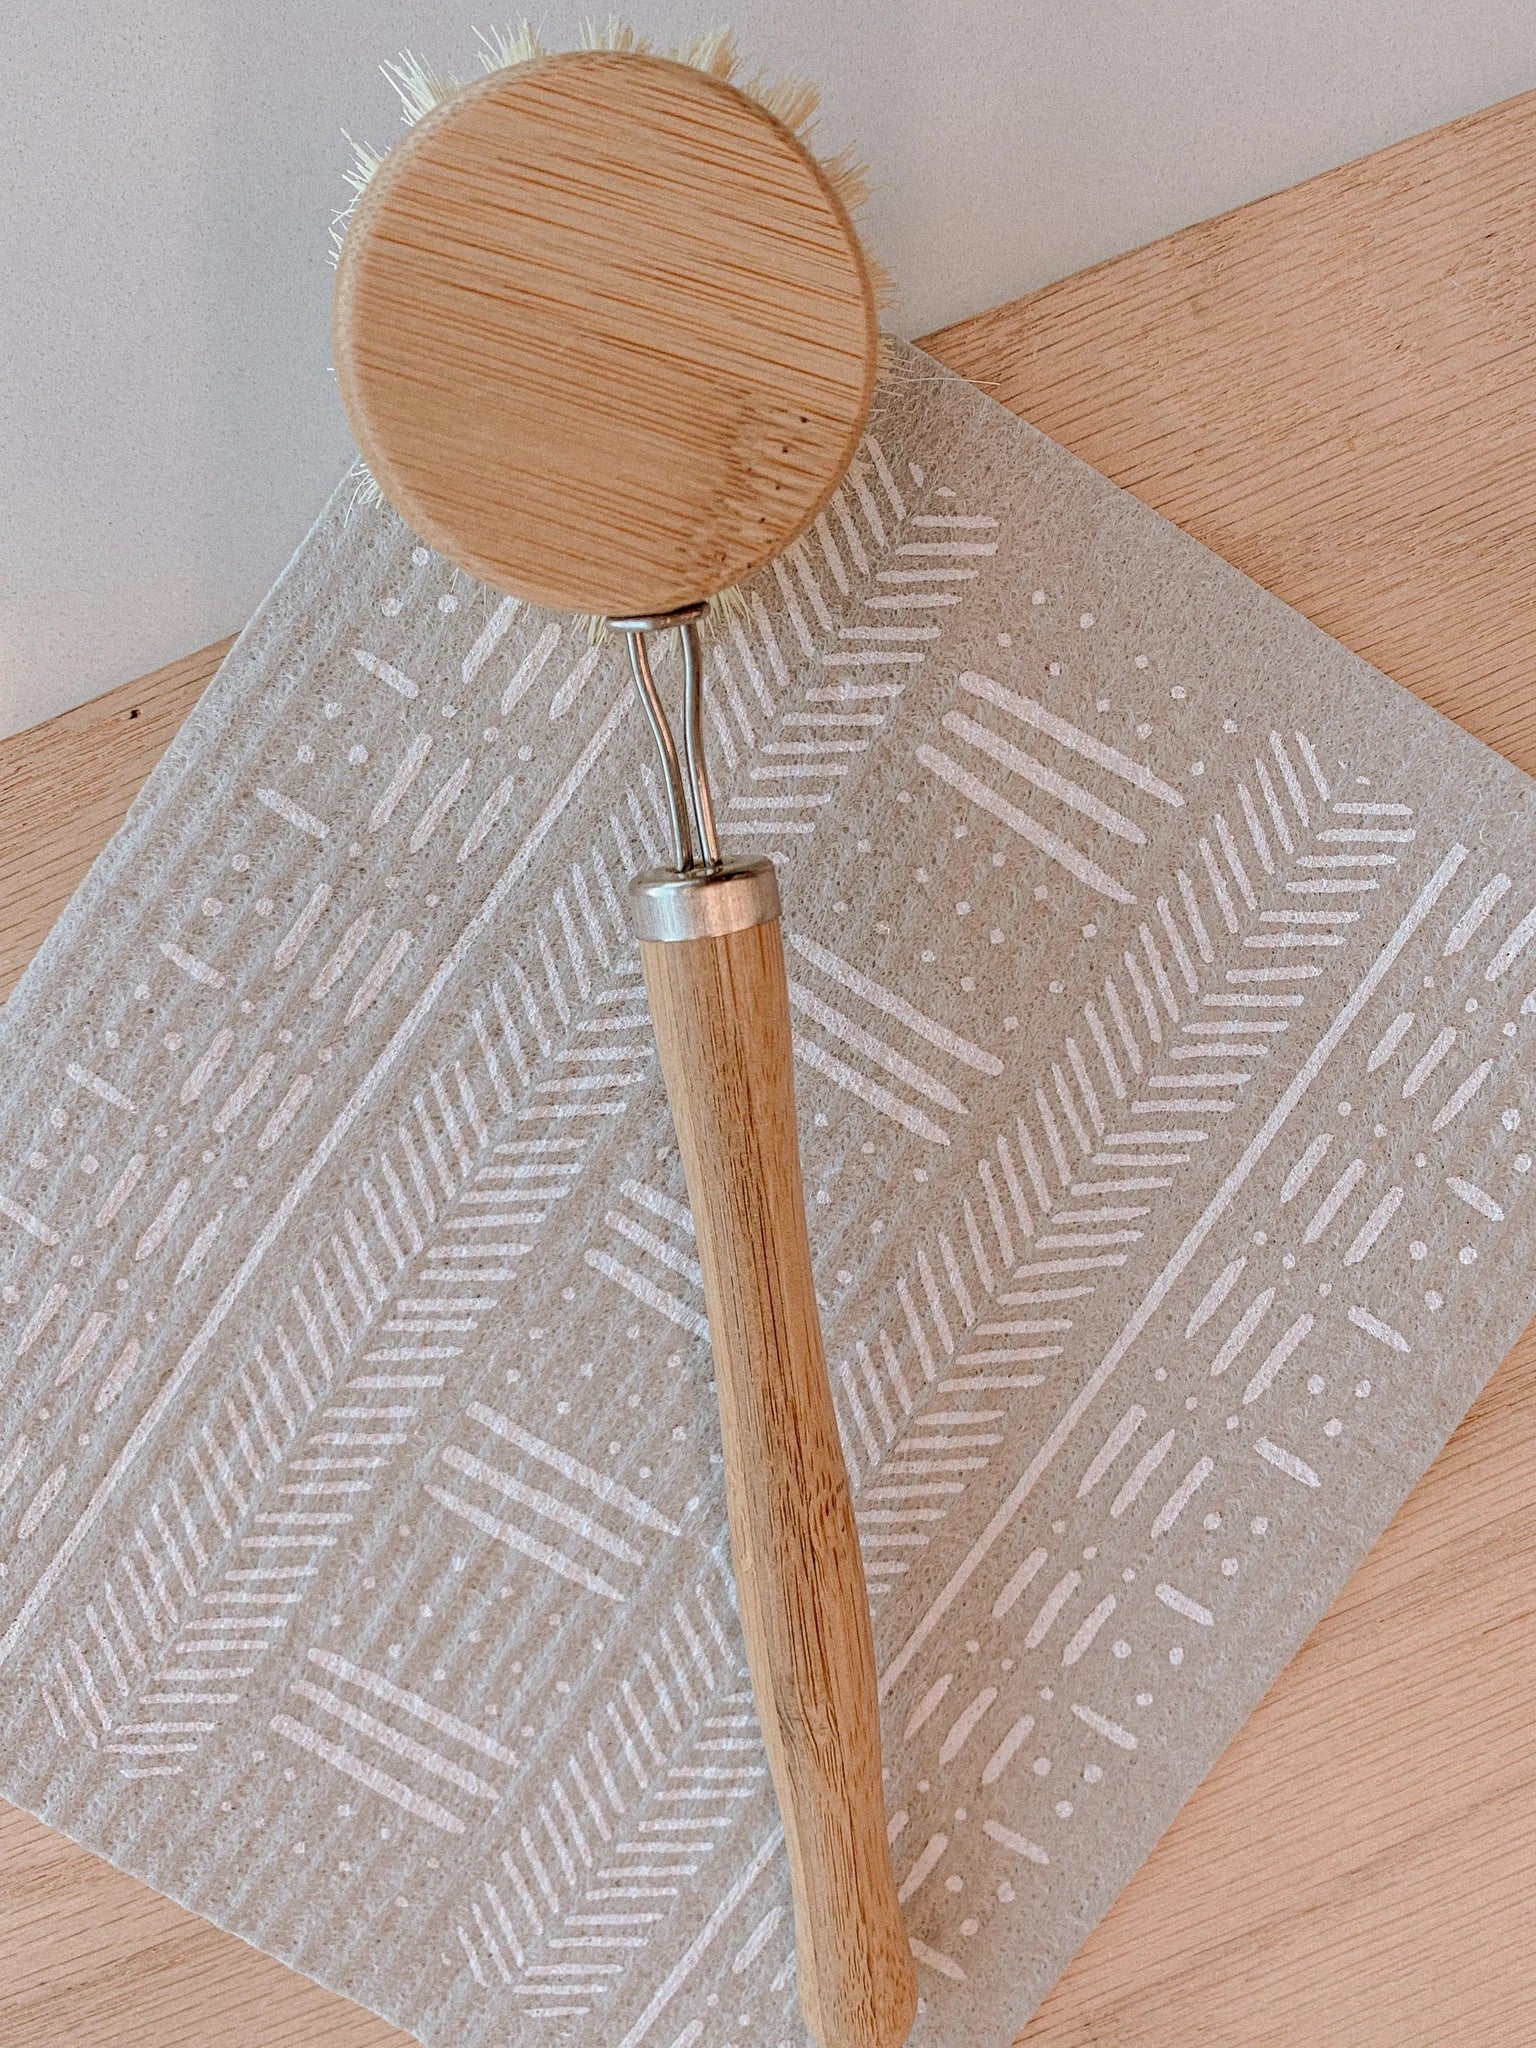 Agave Long Handled Dish Brush